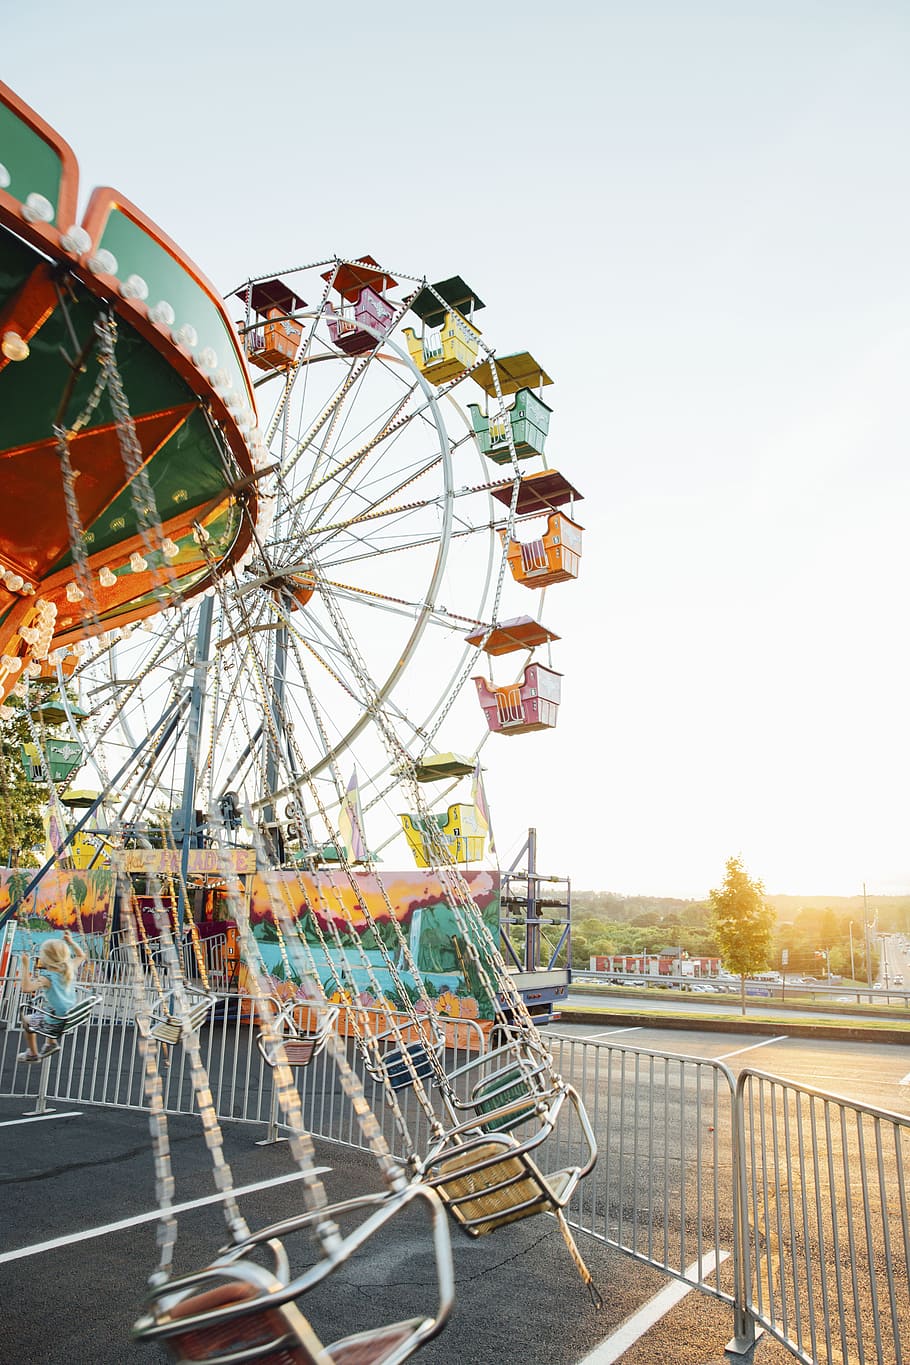 ferris wheel, amusement park, architecture, infrastructure, structure, sun, amusement park ride, arts culture and entertainment, sky, fairground